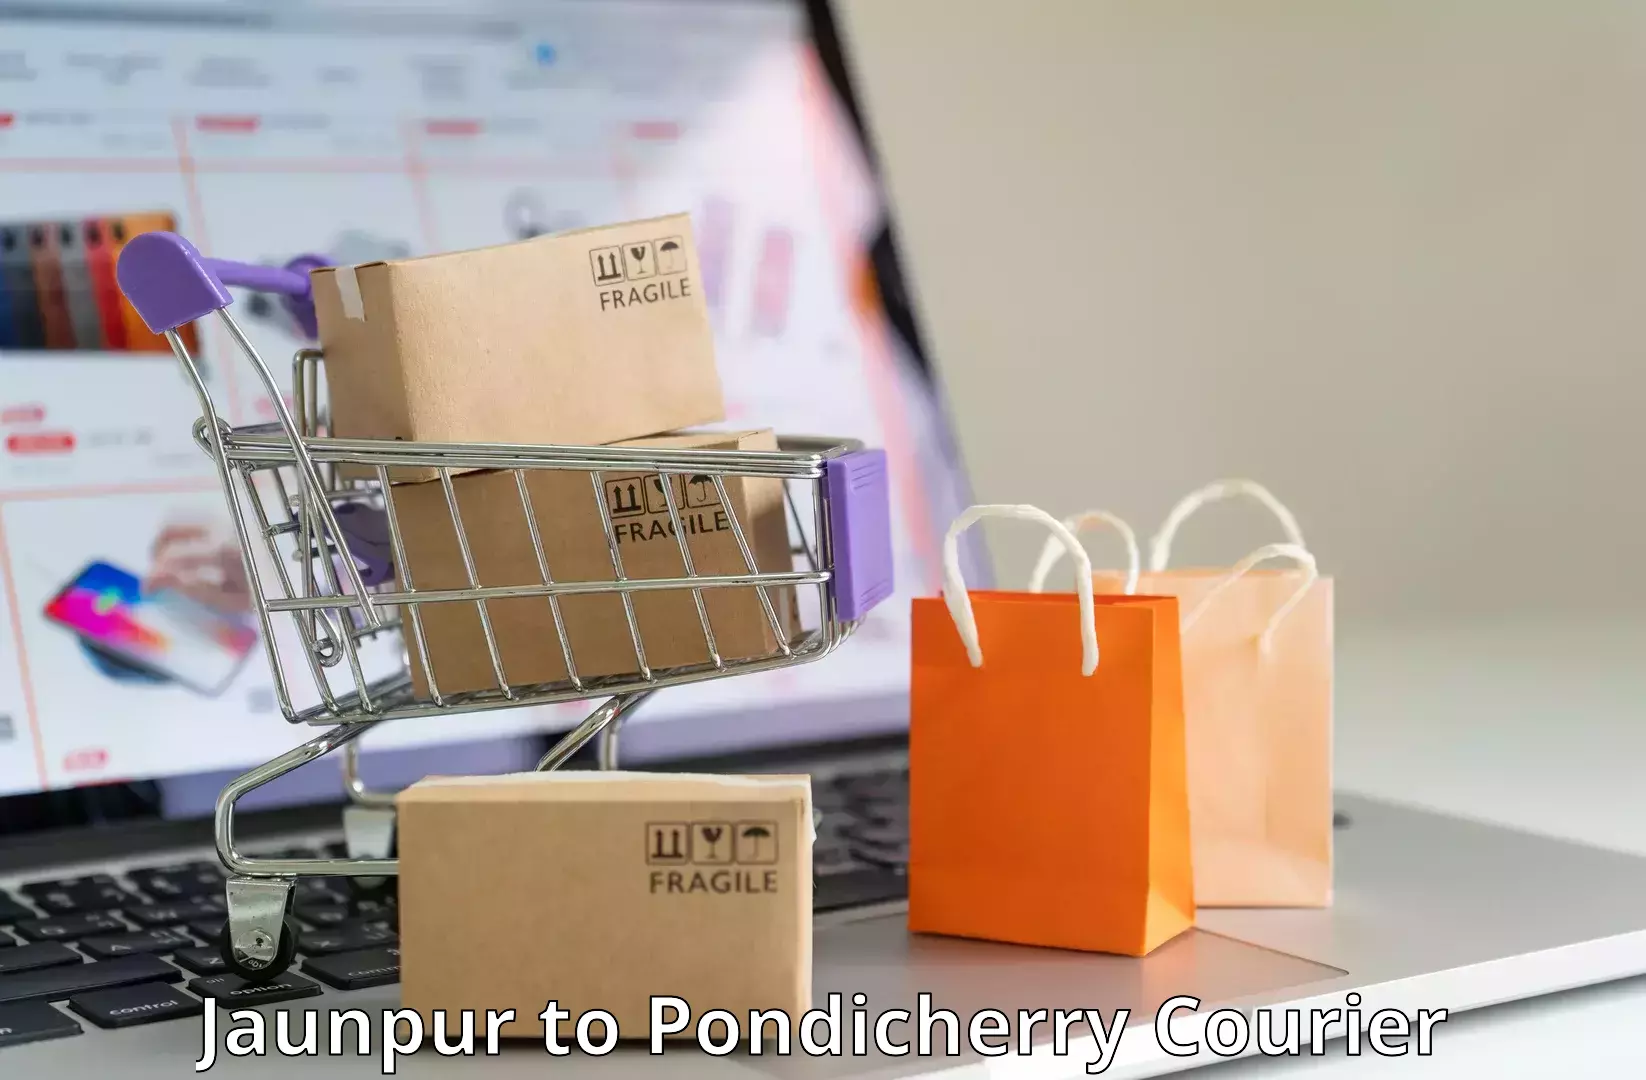 High-speed parcel service Jaunpur to Pondicherry